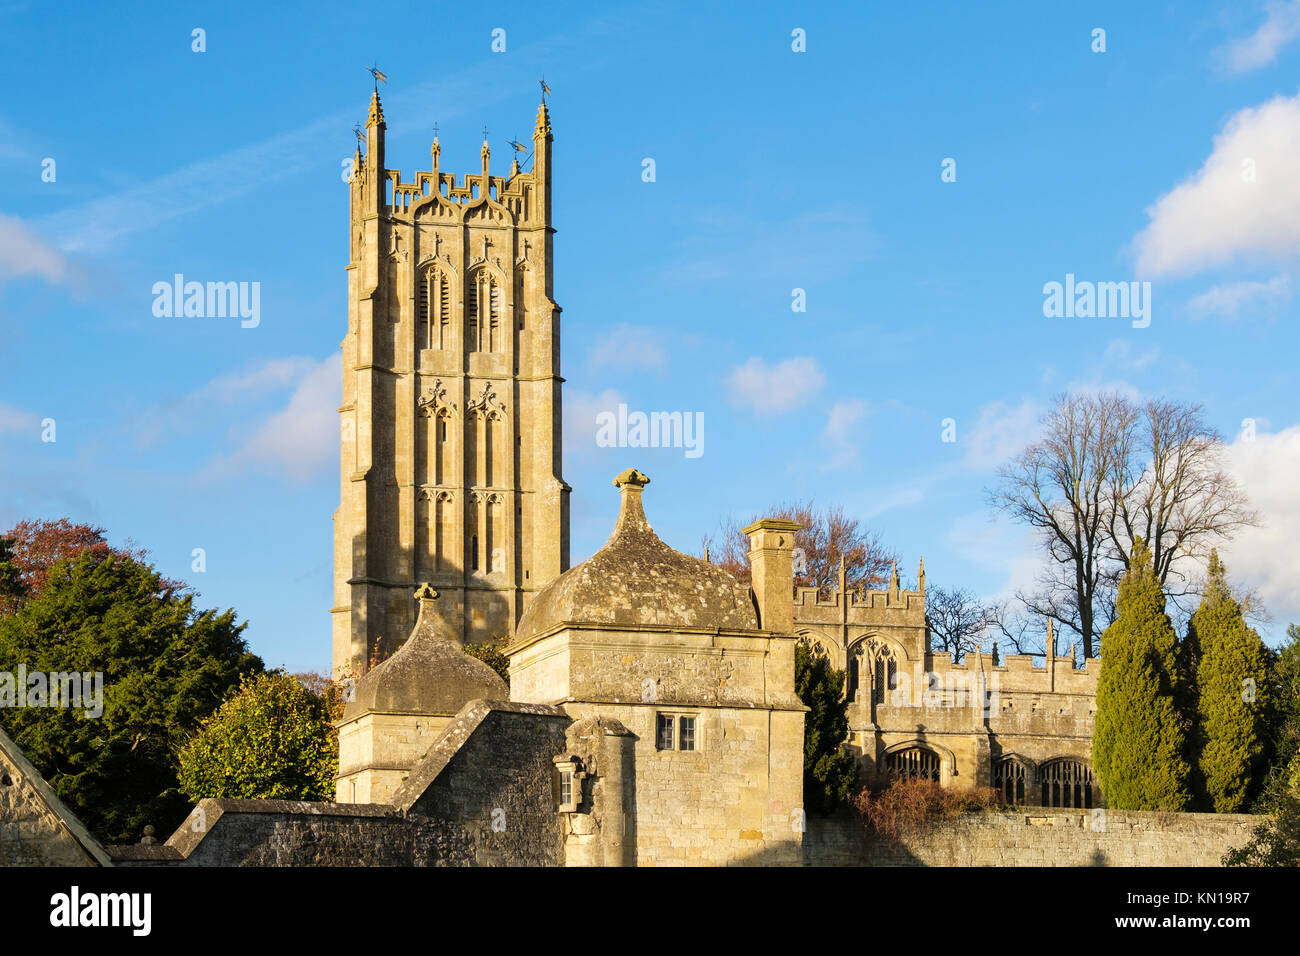 St. James Kirche und Turm in Cotswold Kalkstein im historischen Chipping Campden, Gloucestershire, Cotswolds, England, Großbritannien, Großbritannien Stockfoto